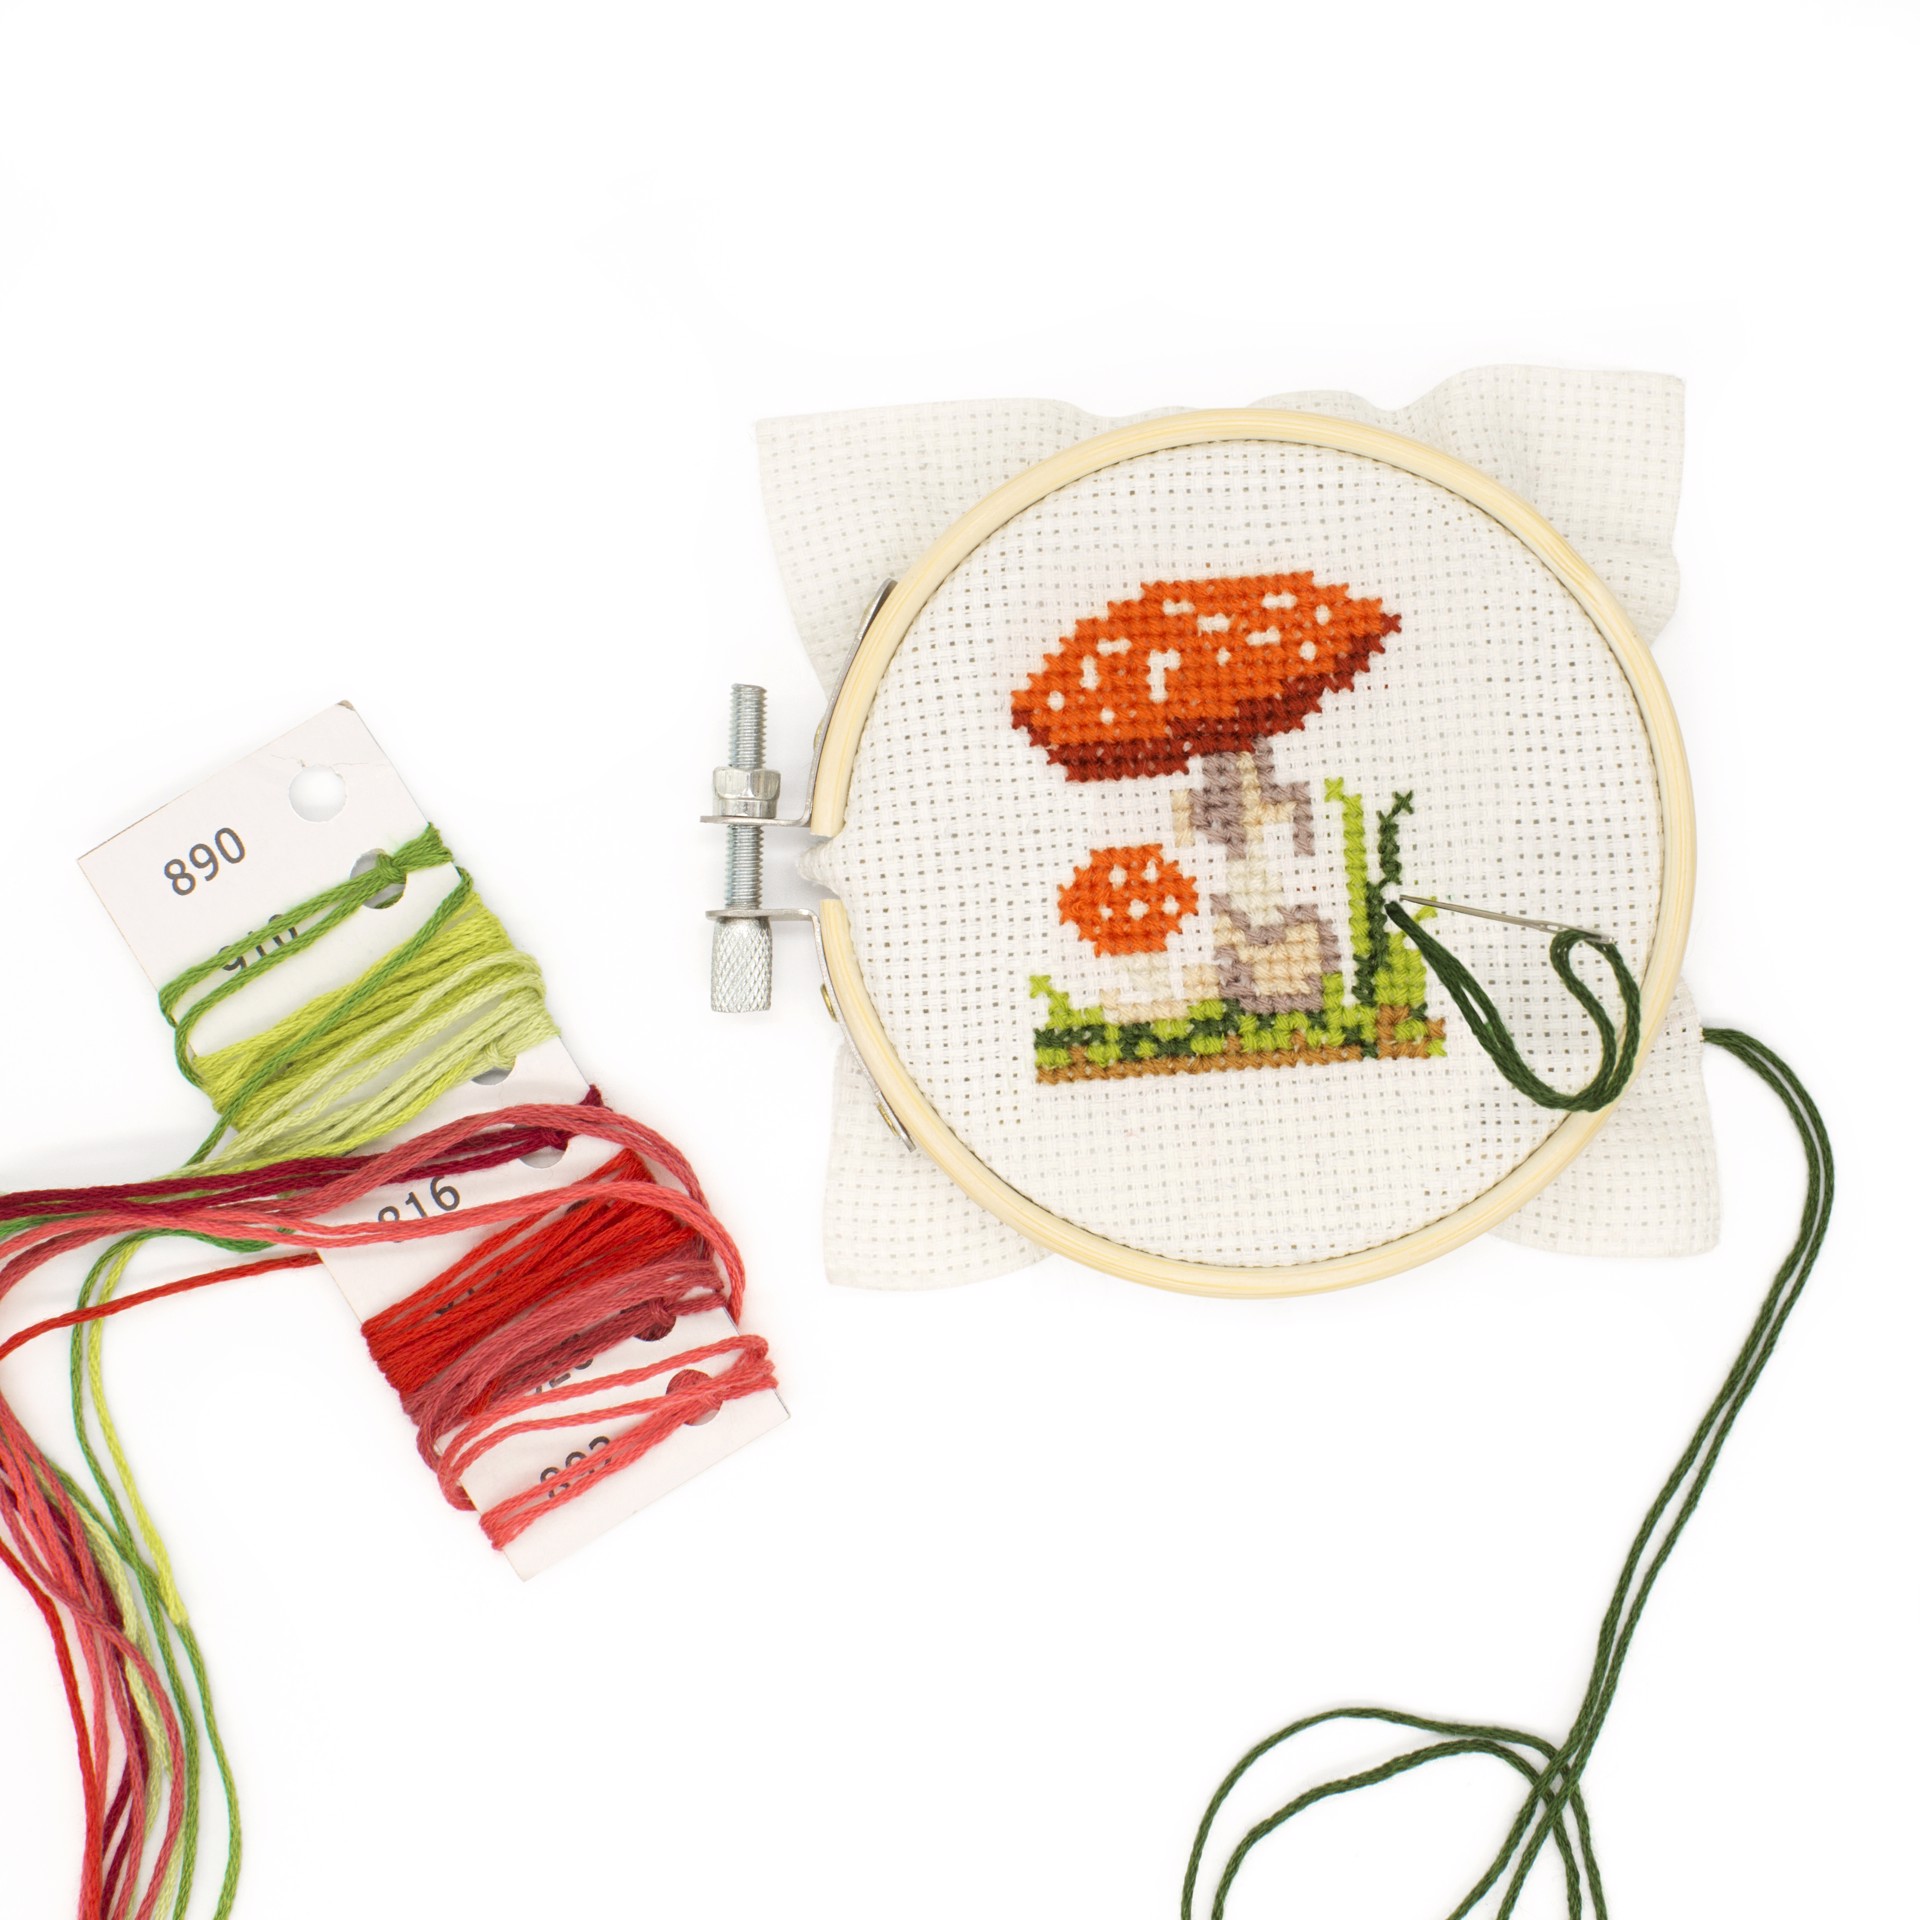 Mini Cross Stitch Kit - Mushroom by Chauvet Arts